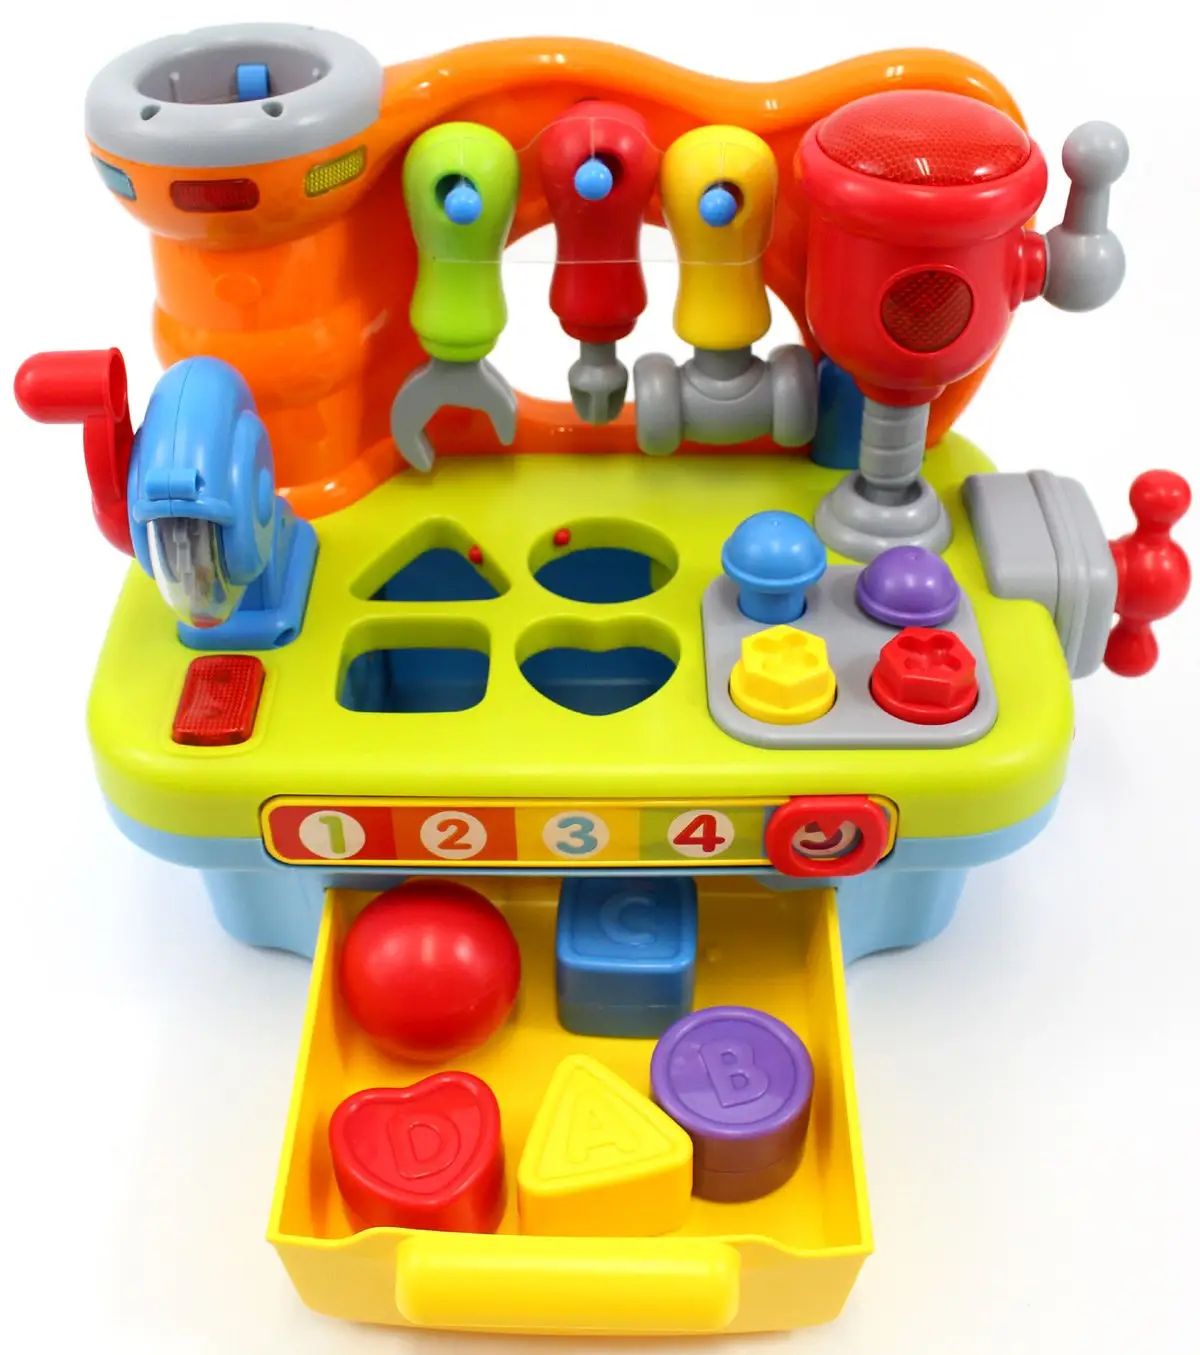 โต๊ะของเล่นมัลติฟังก์ชั่นสำหรับเด็ก,มีเสียงและไฟแสร้งทำเป็นเครื่องมือของเล่นสำหรับเด็กแกล้งทำงานก่อสร้าง